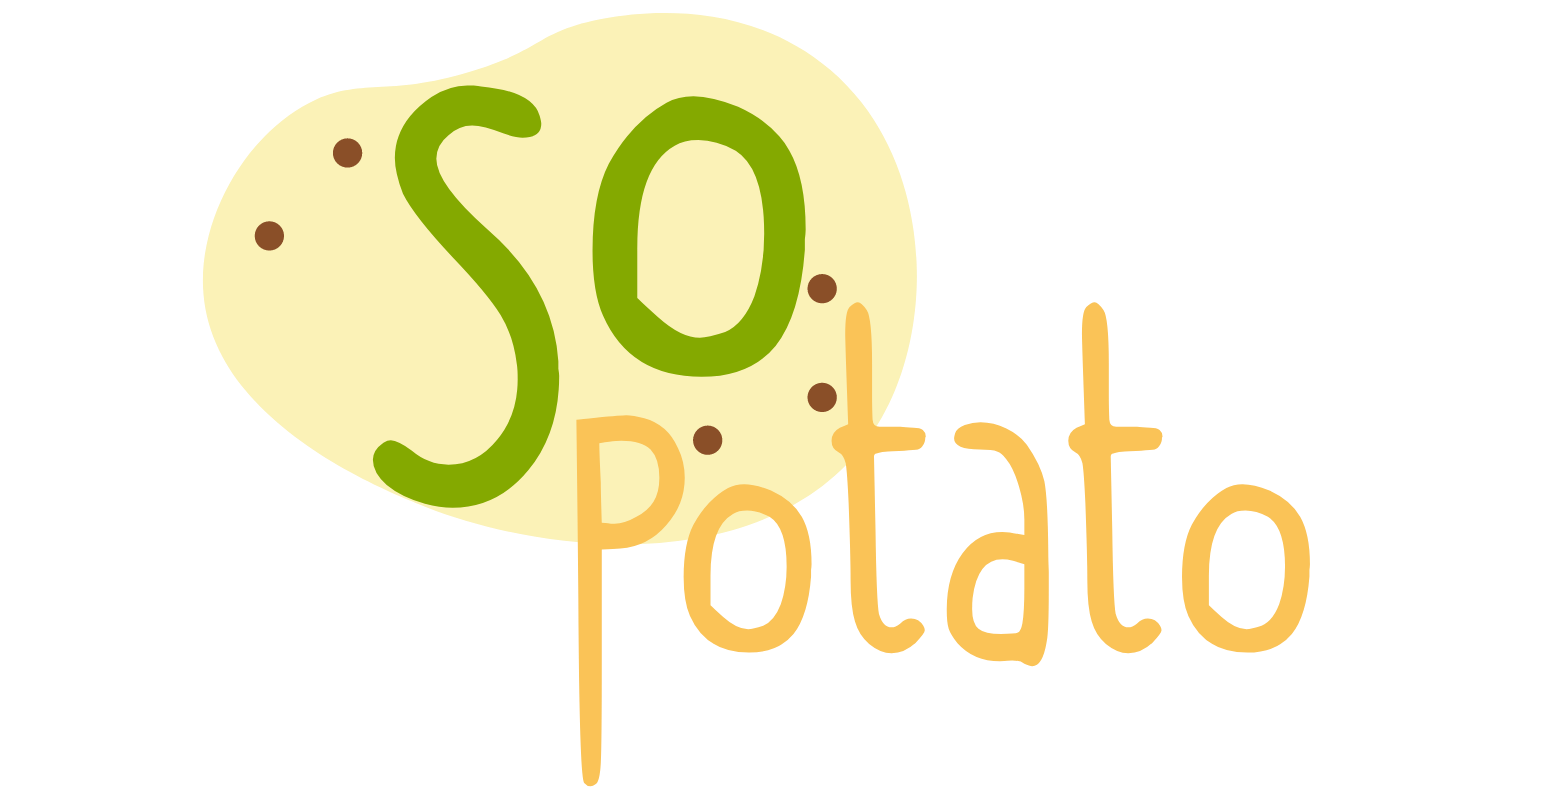 So Potato